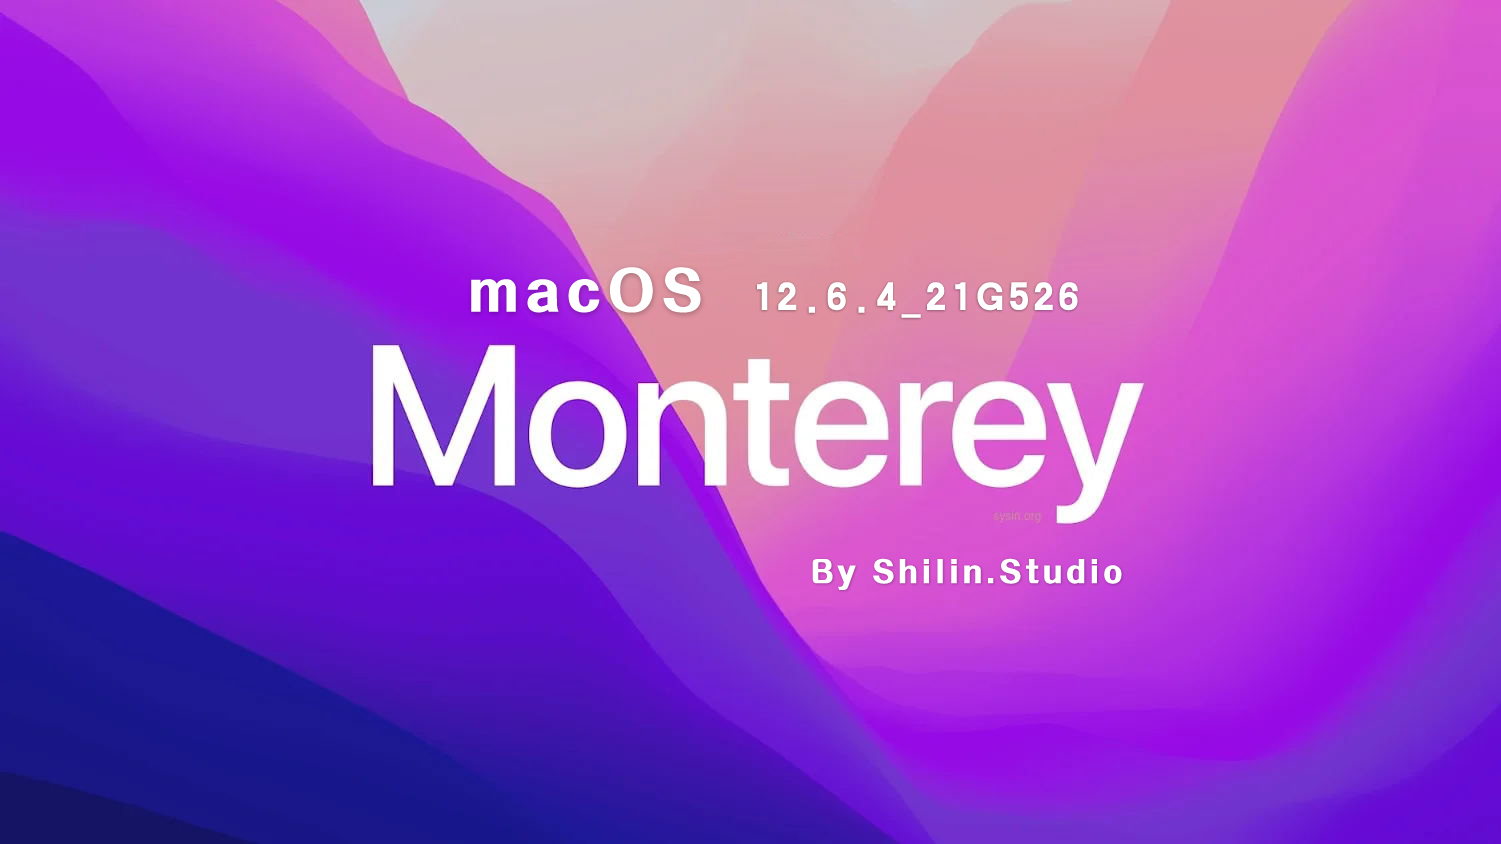 [macOS]macOS_Monterey_12.6.4_21G526_For_Shilin.Studio.iso可引导可虚拟机安装镜像包（已修复引导并优化）